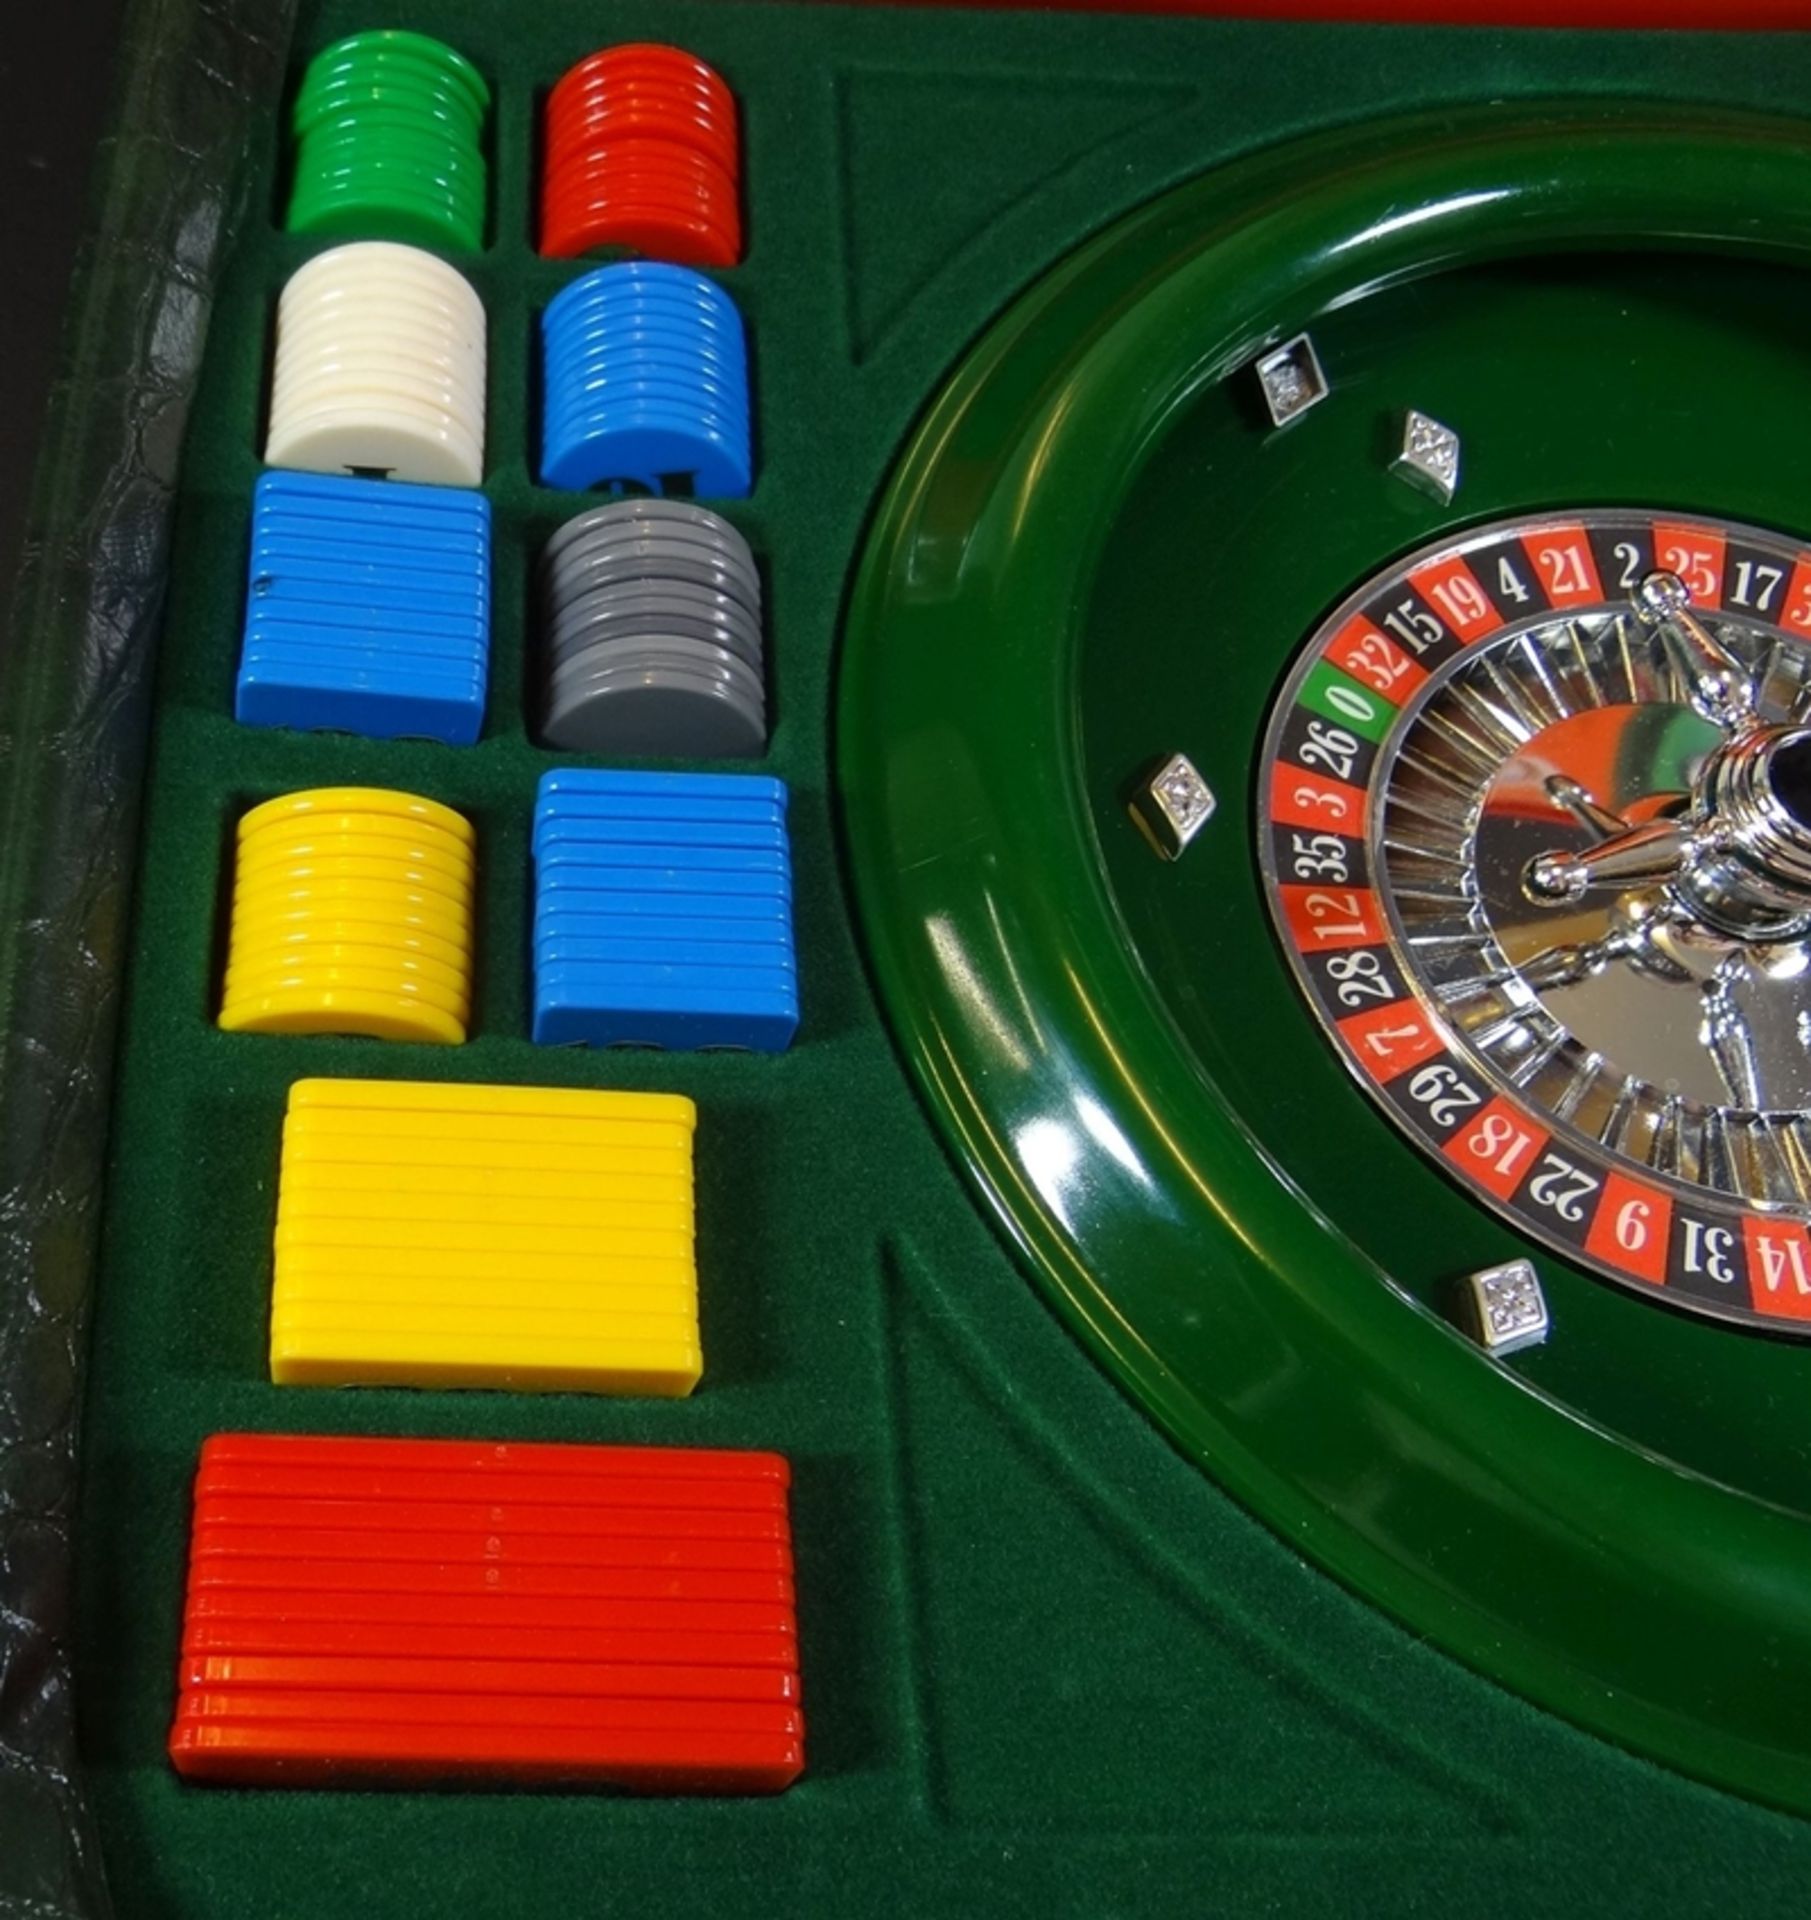 Roulette-Spiel in Koffer, 29x44 cm - Bild 2 aus 4